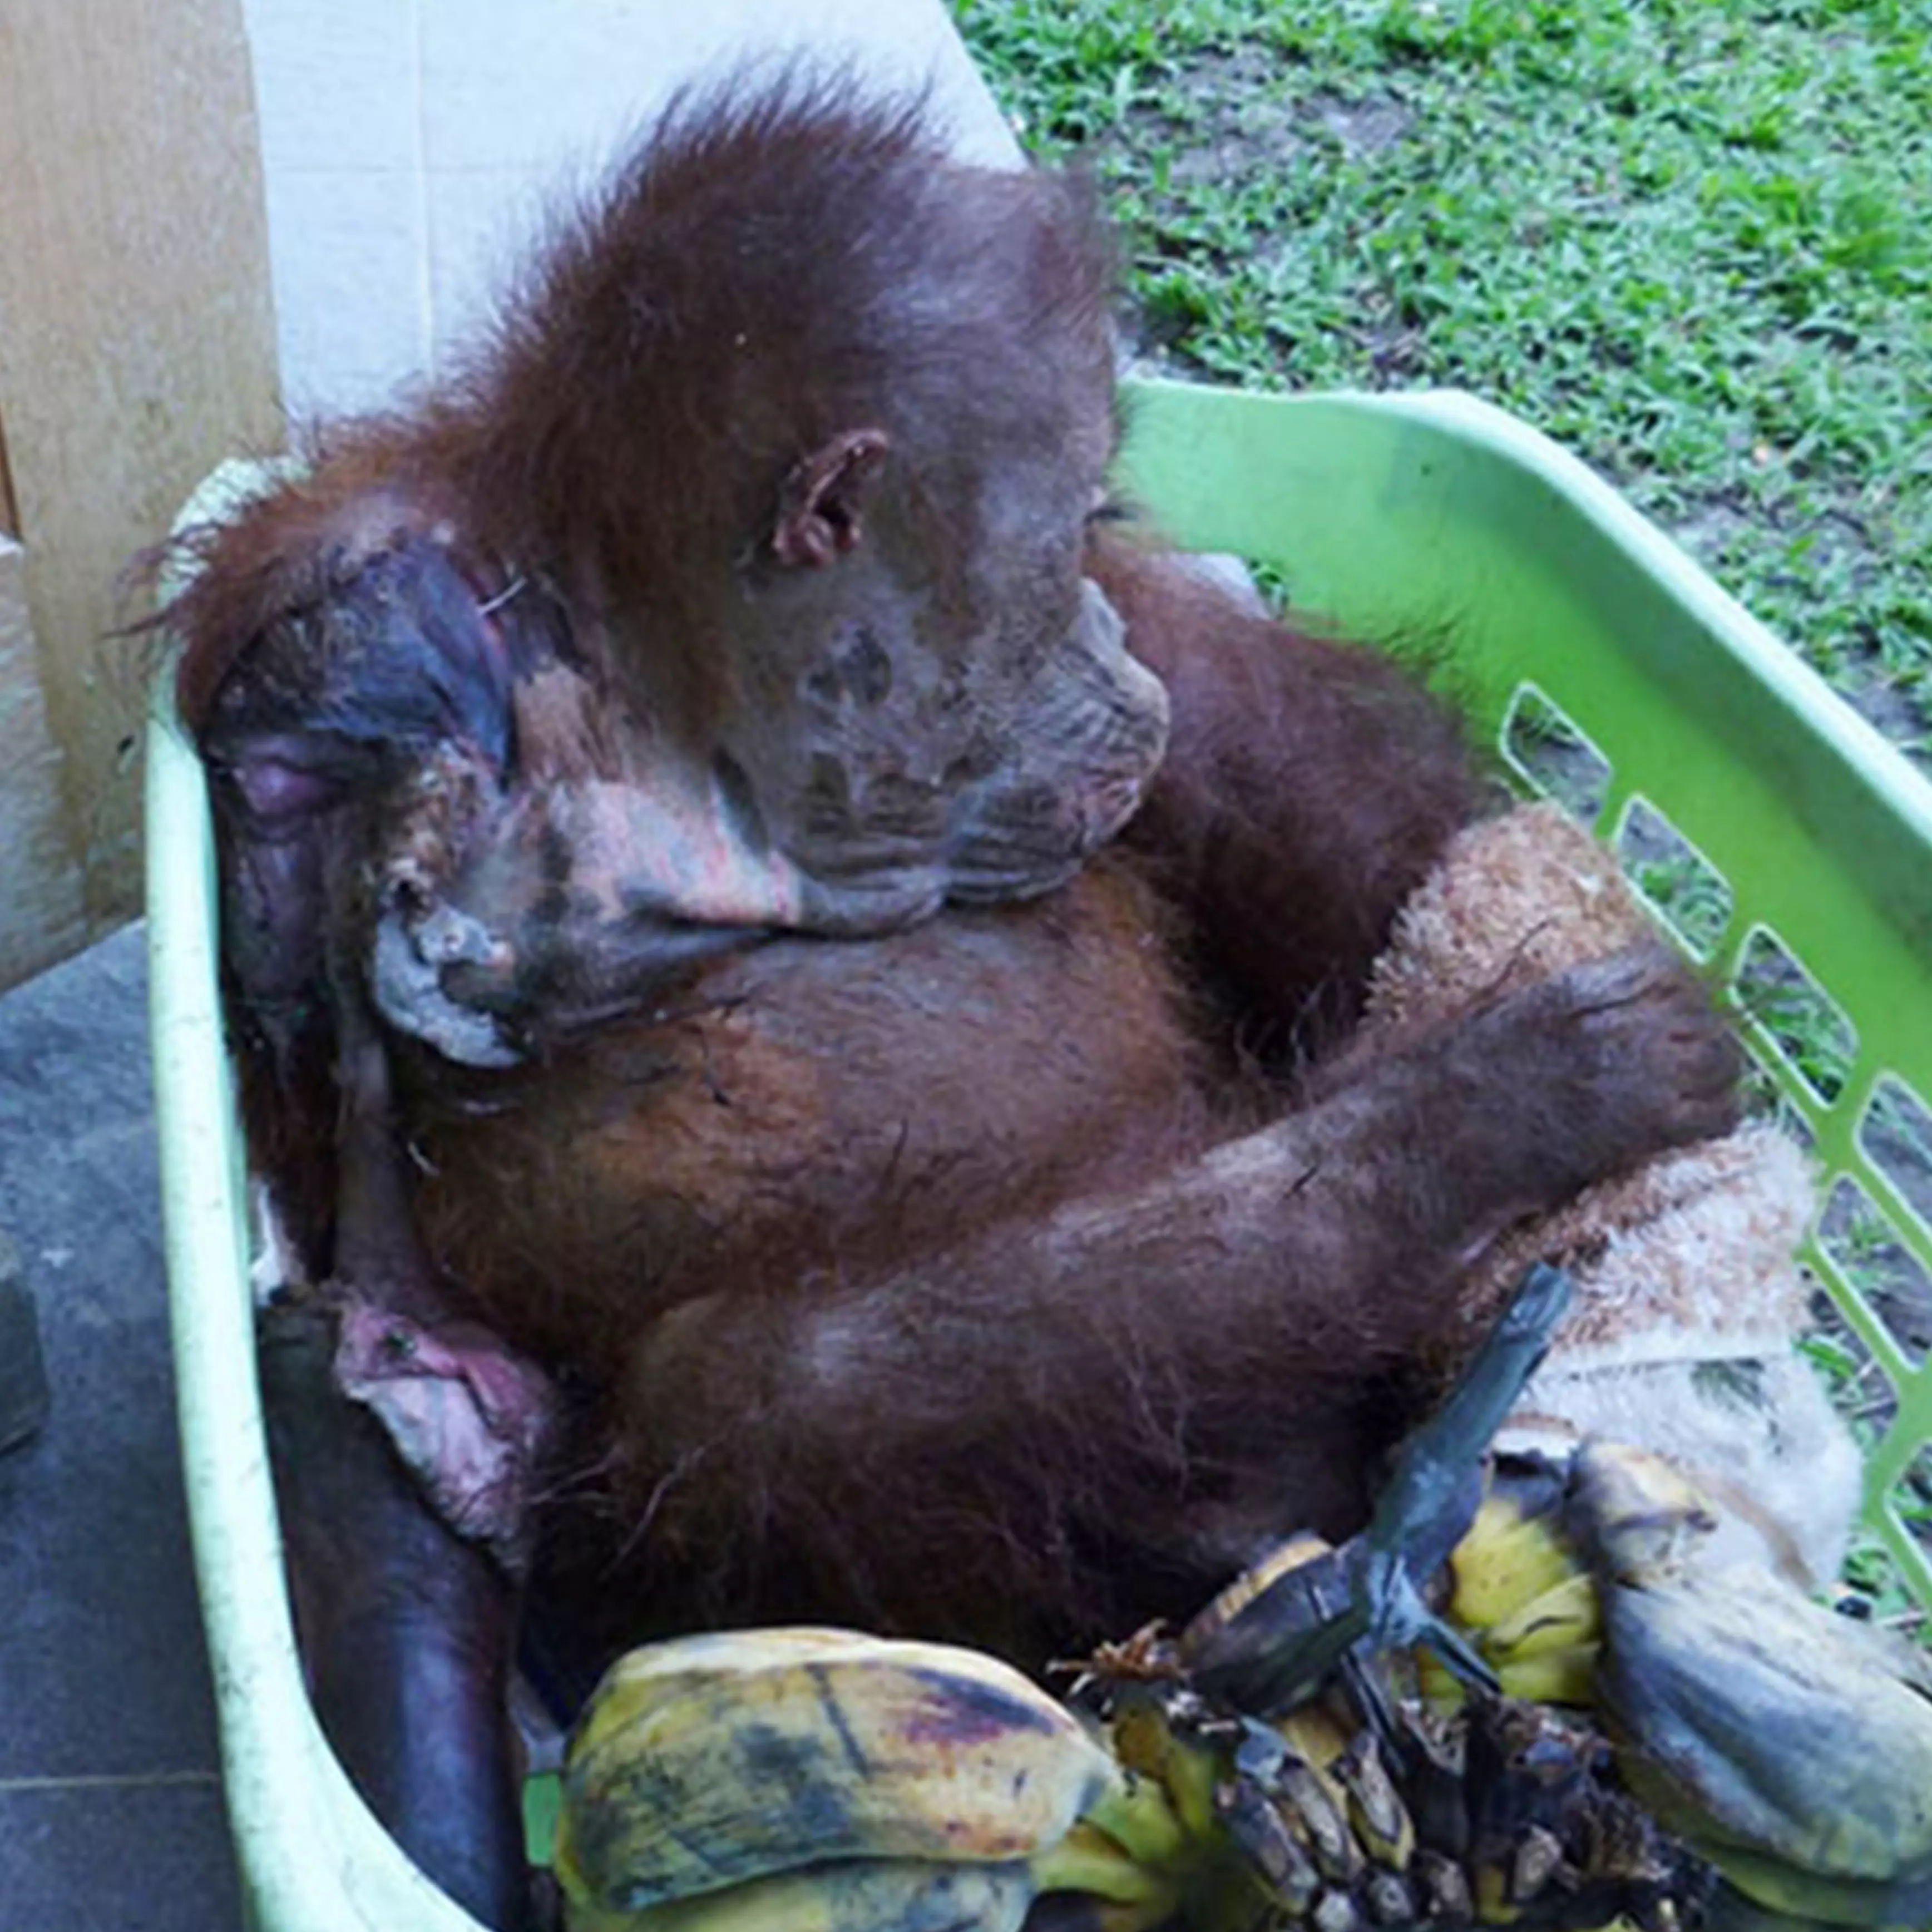 The orangutan suffered awful burns (